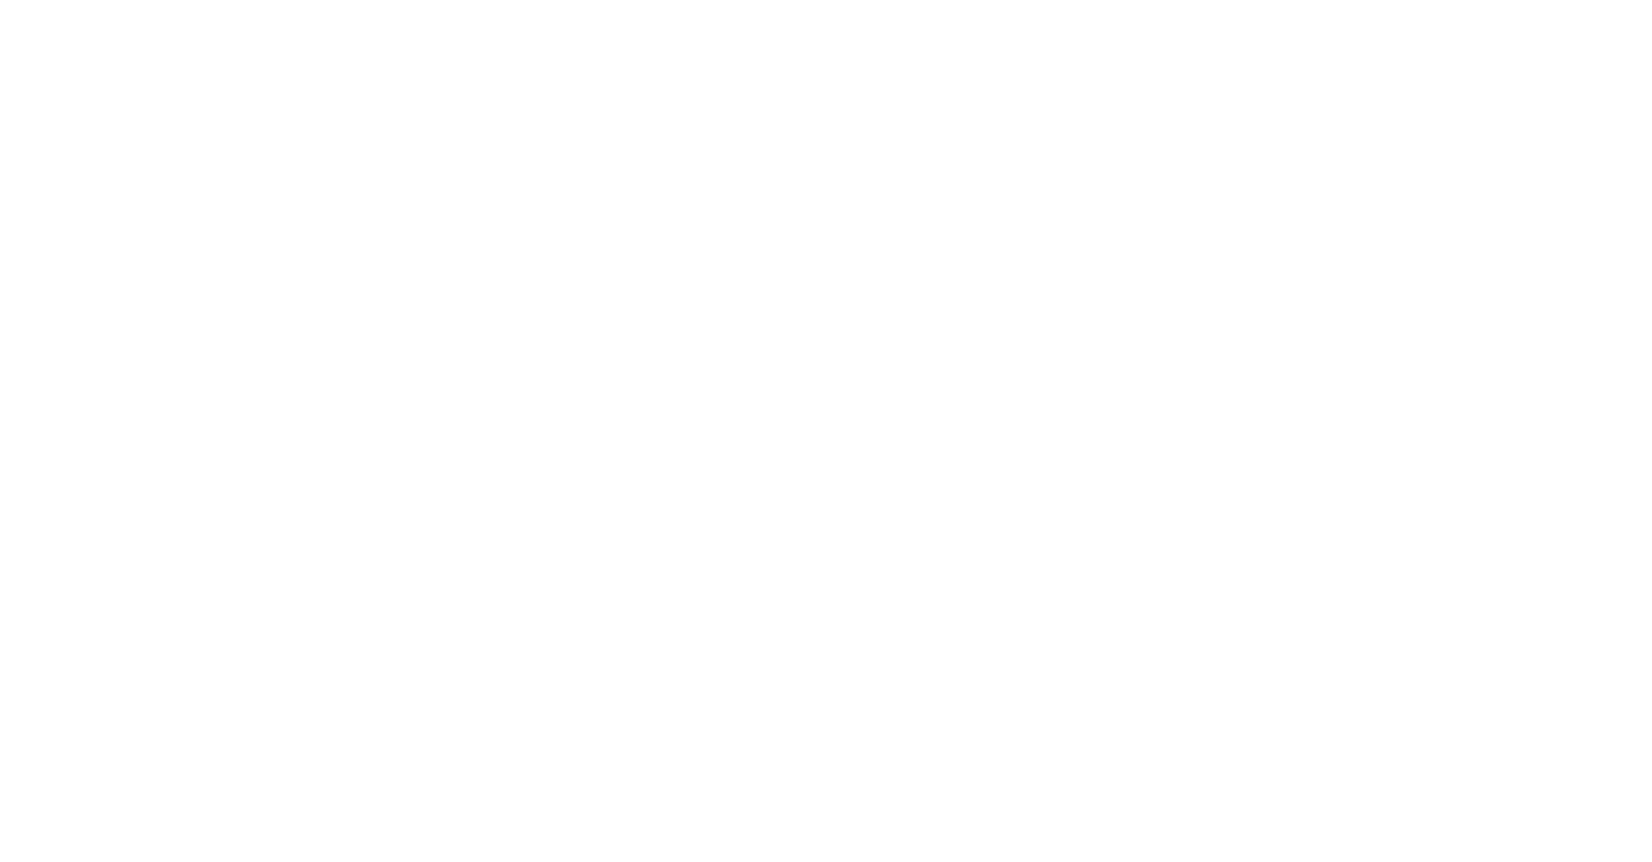 BMW logo large for dark backgrounds (transparent PNG)